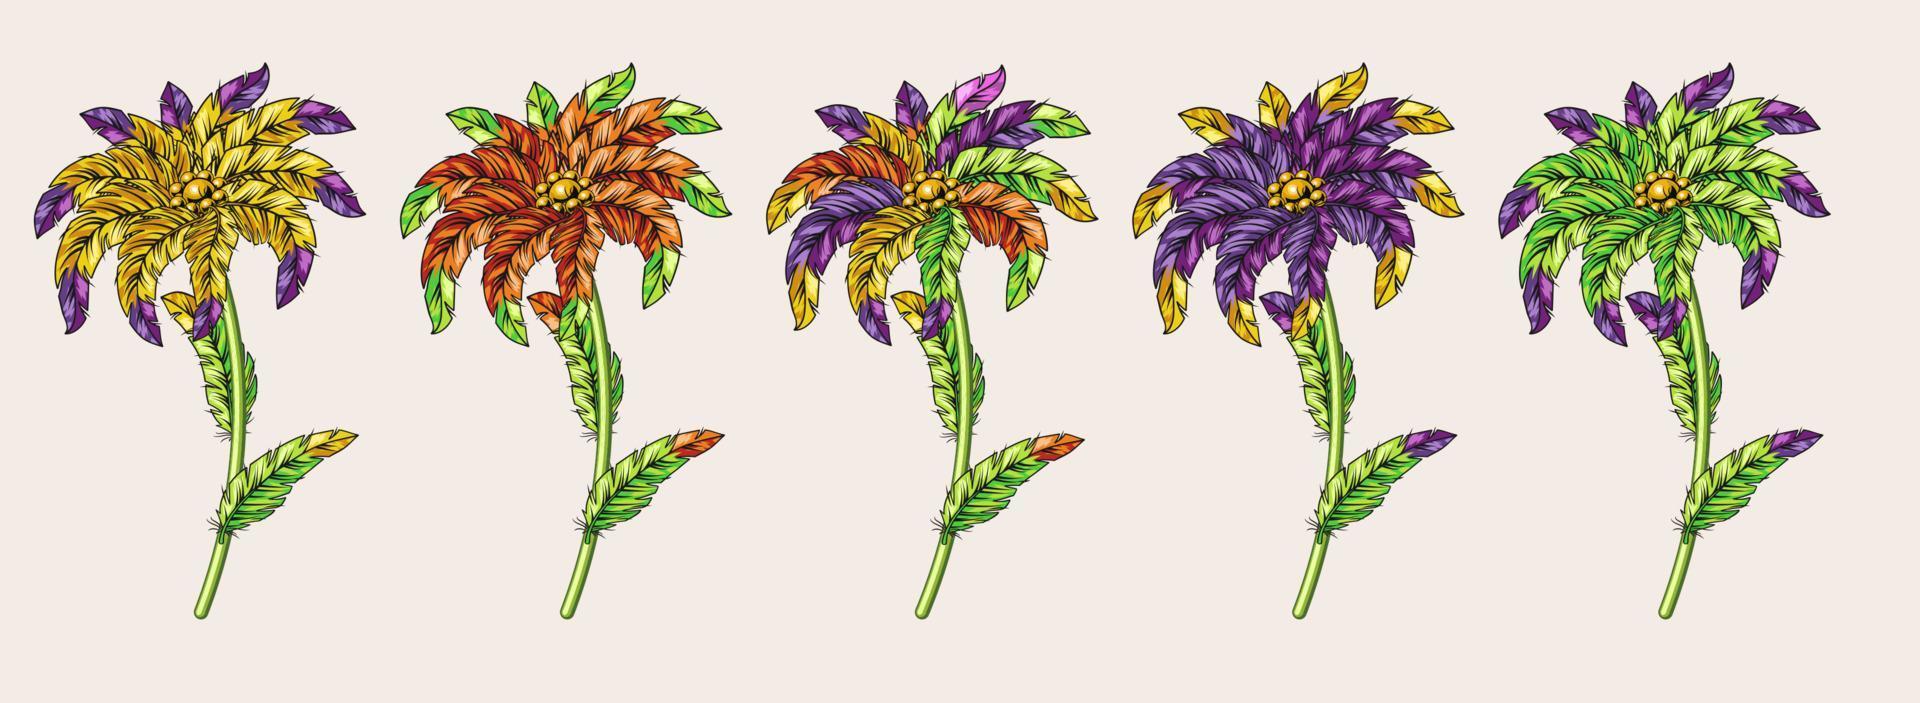 Set kreativer Blumen aus Karnevalsfedern mit bunten Spitzen. kreative Fantasy-Illustration vektor